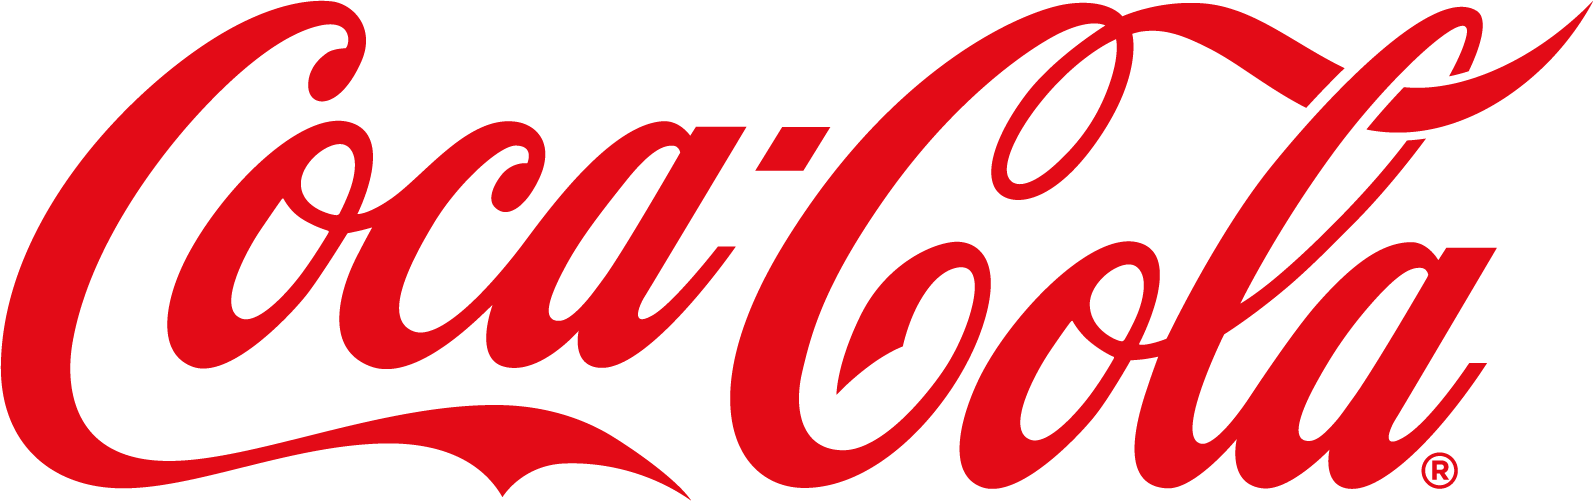 Coca Cola Script logo_CC_FWC_TT_COCA-COLA_SPENCERIAN_SCRIPT_RGB